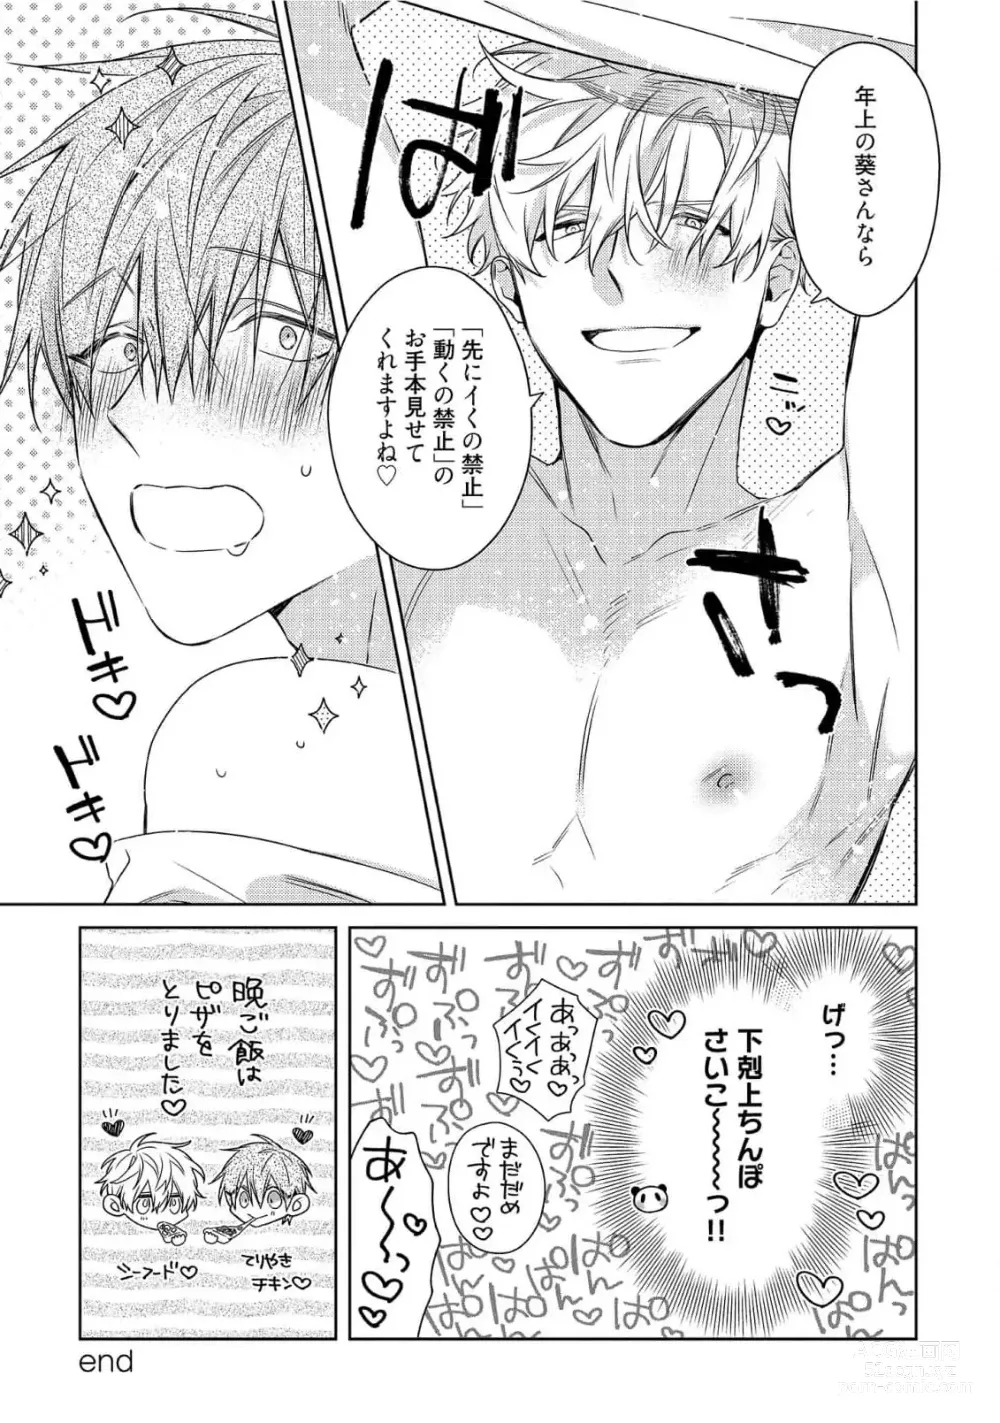 Page 278 of manga Motto! Ecchi wa shuu 7 Kibou Desu!